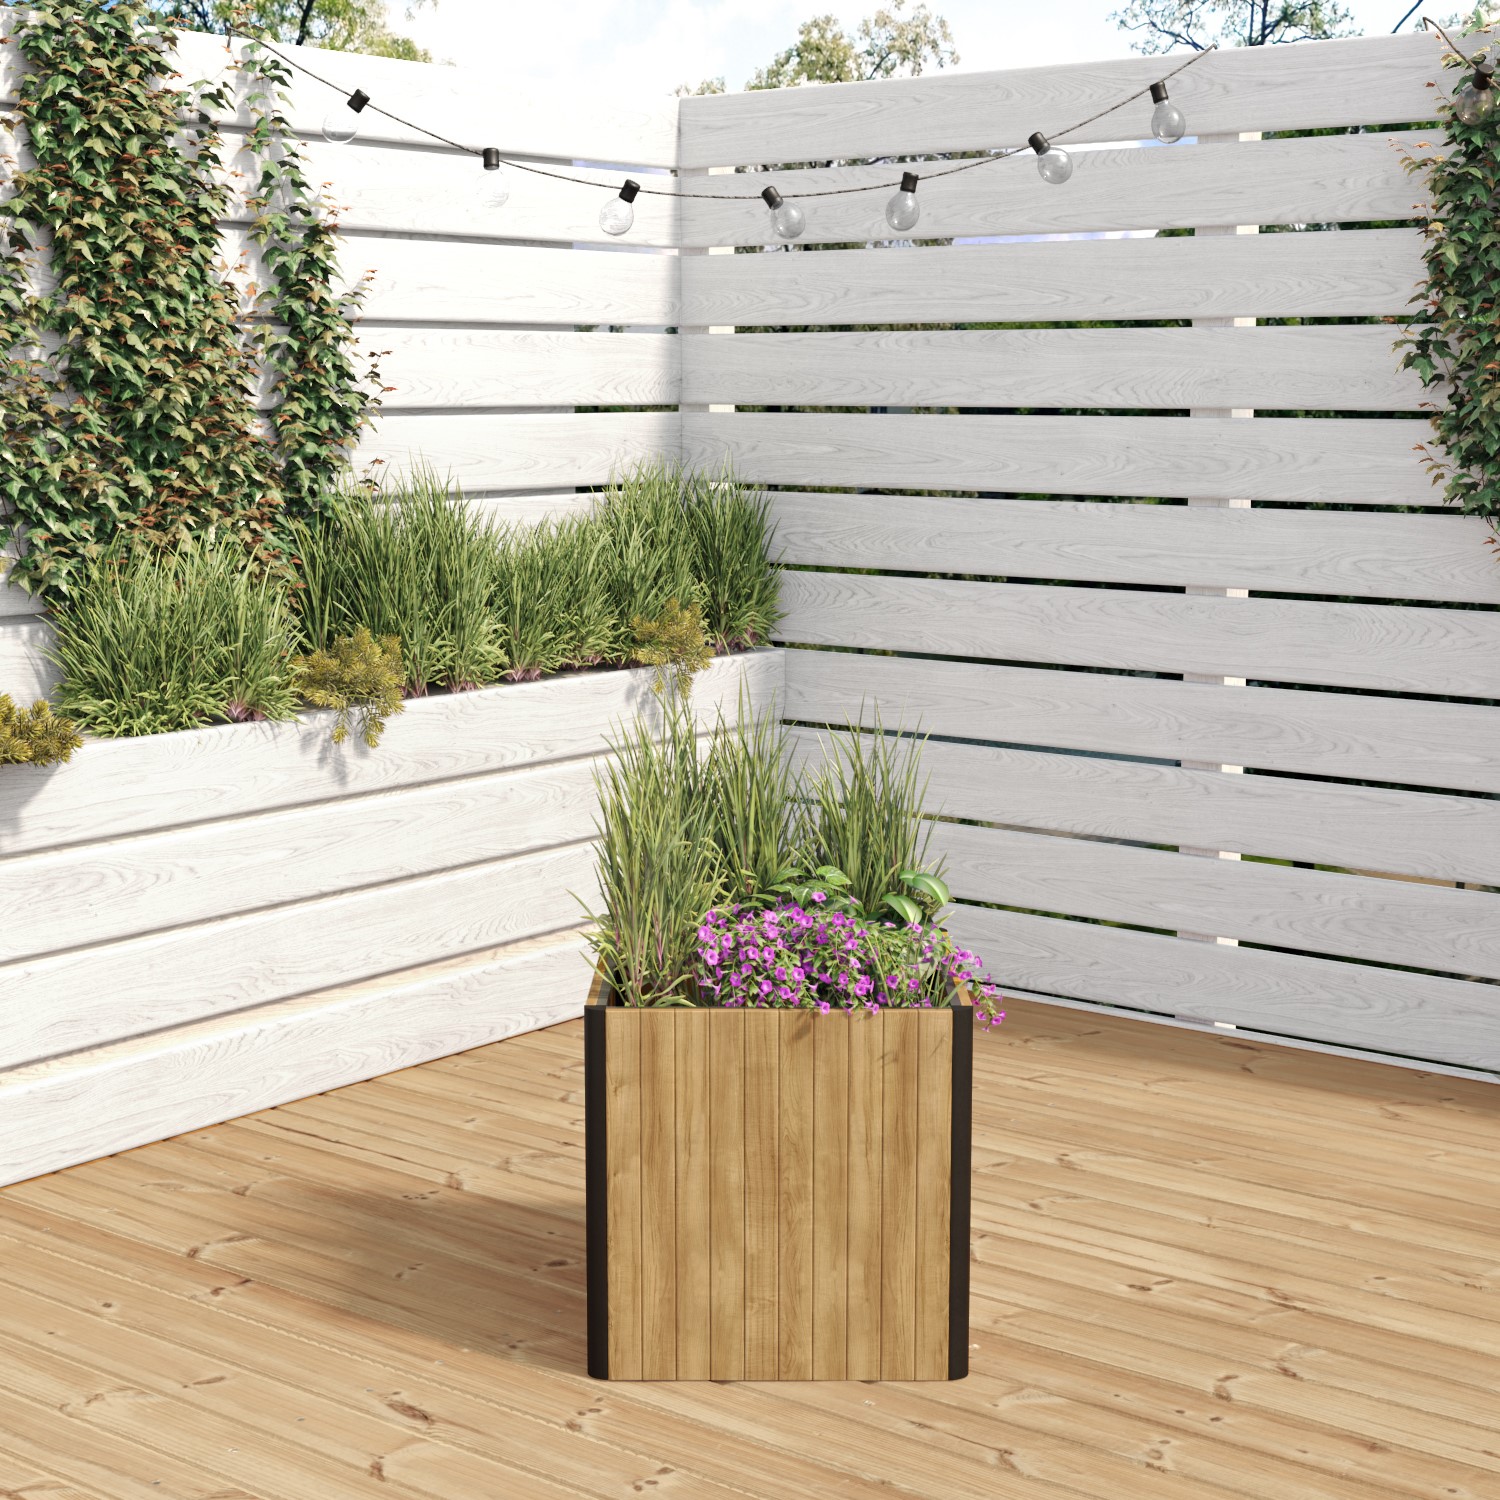 Read more about Square wooden garden planter 55 x 55cm como